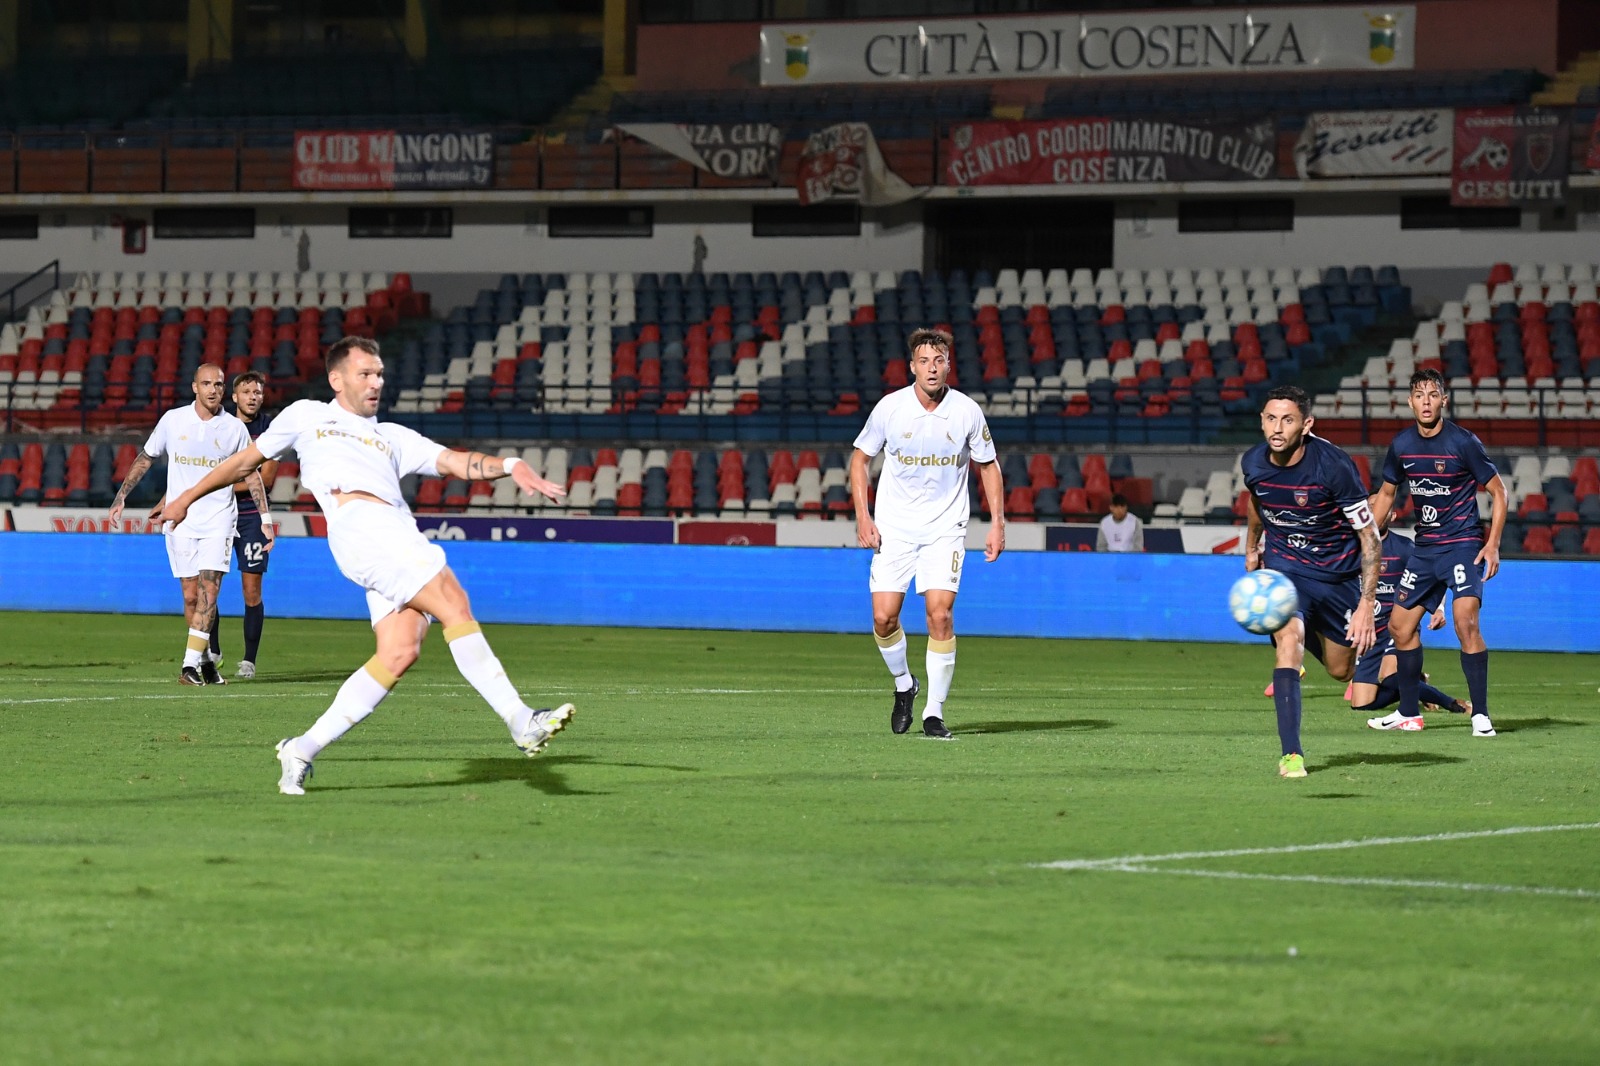 Cosenza-Modena 1-2: risultato finale e highlights